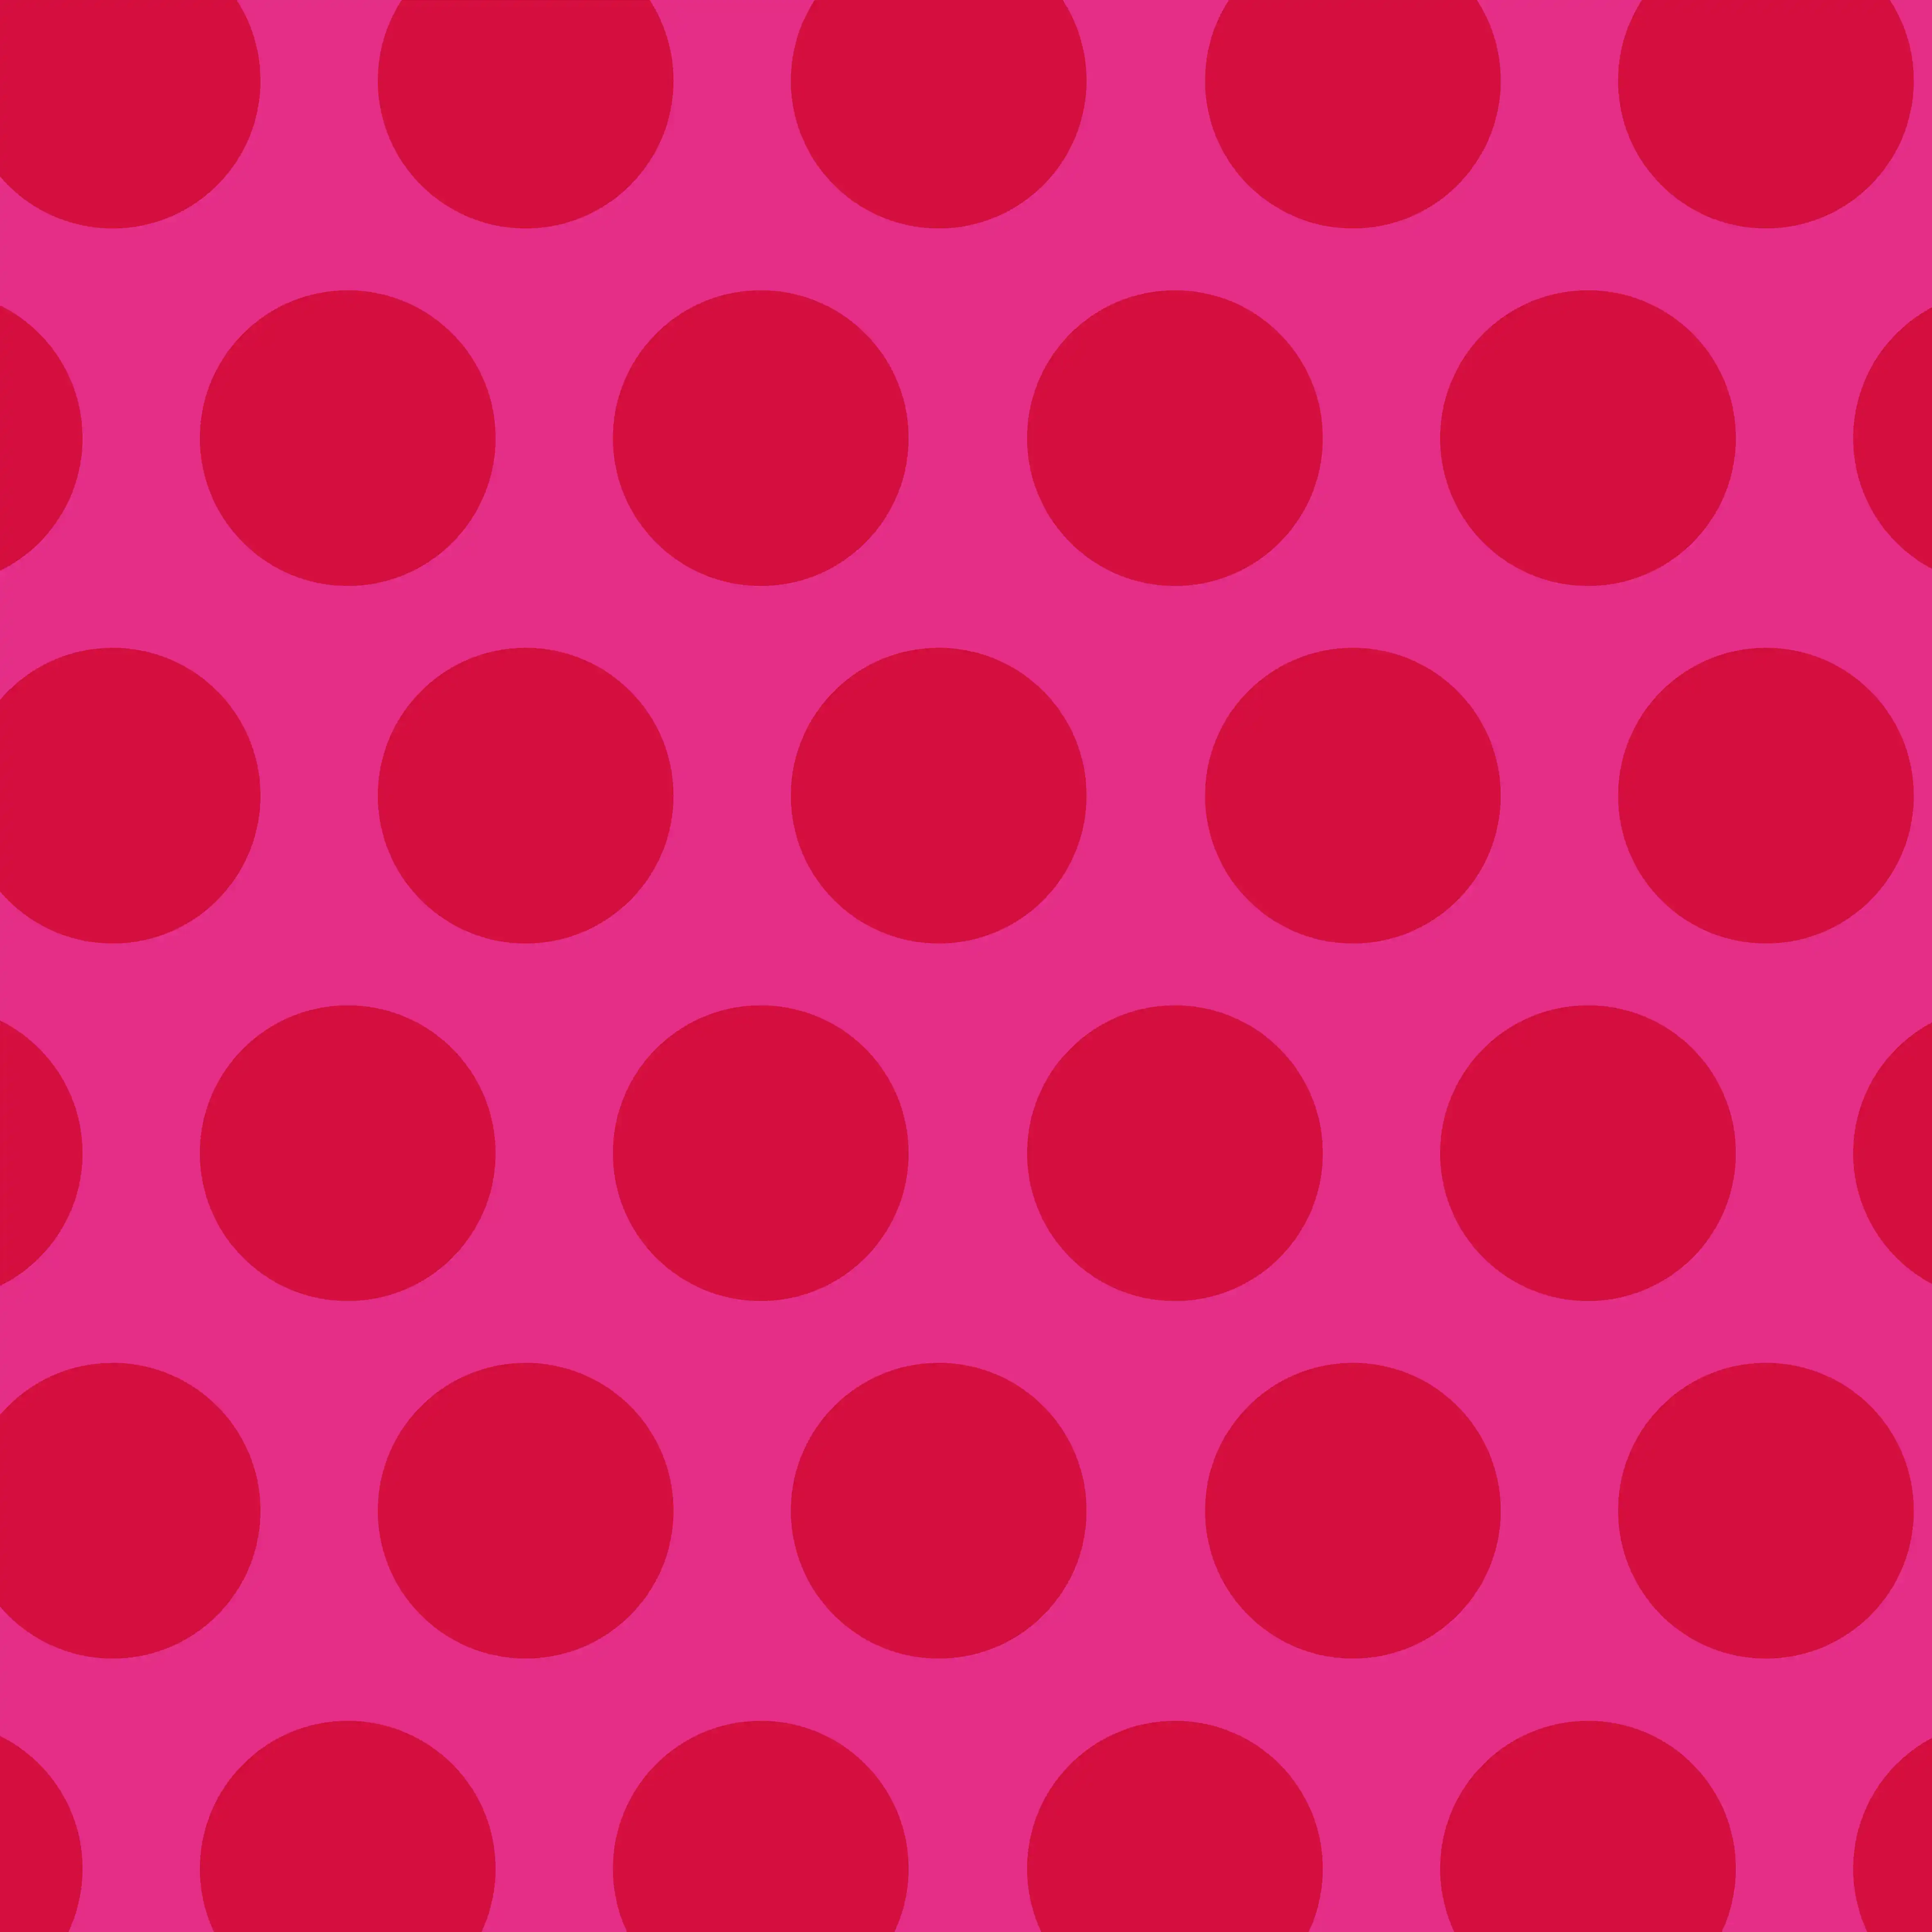 geschenkpapierbögen - rote punkte auf pink